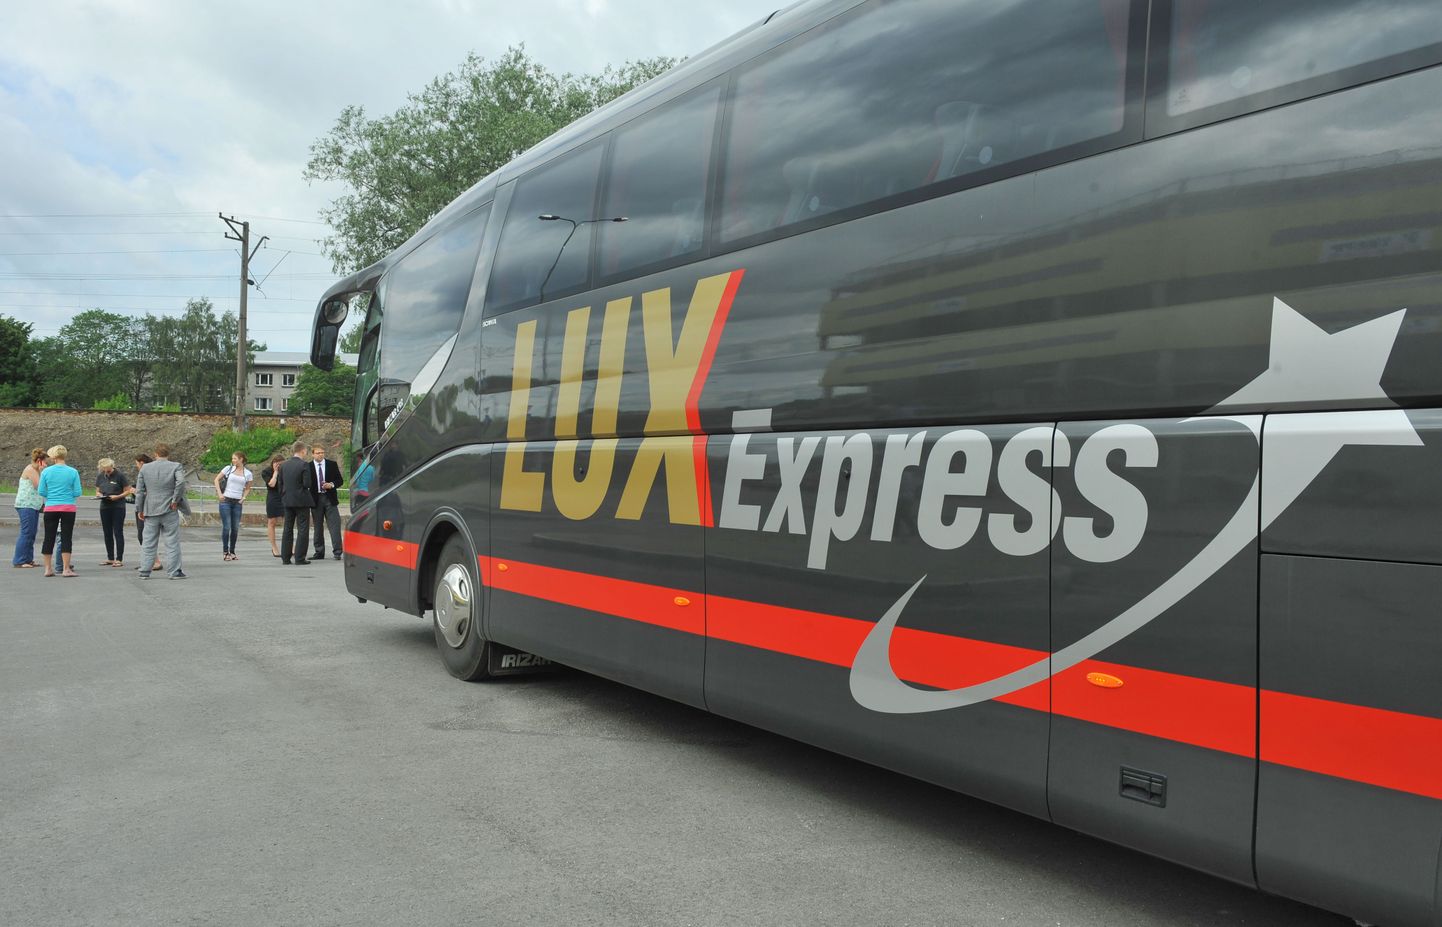 Lux Expressi buss.